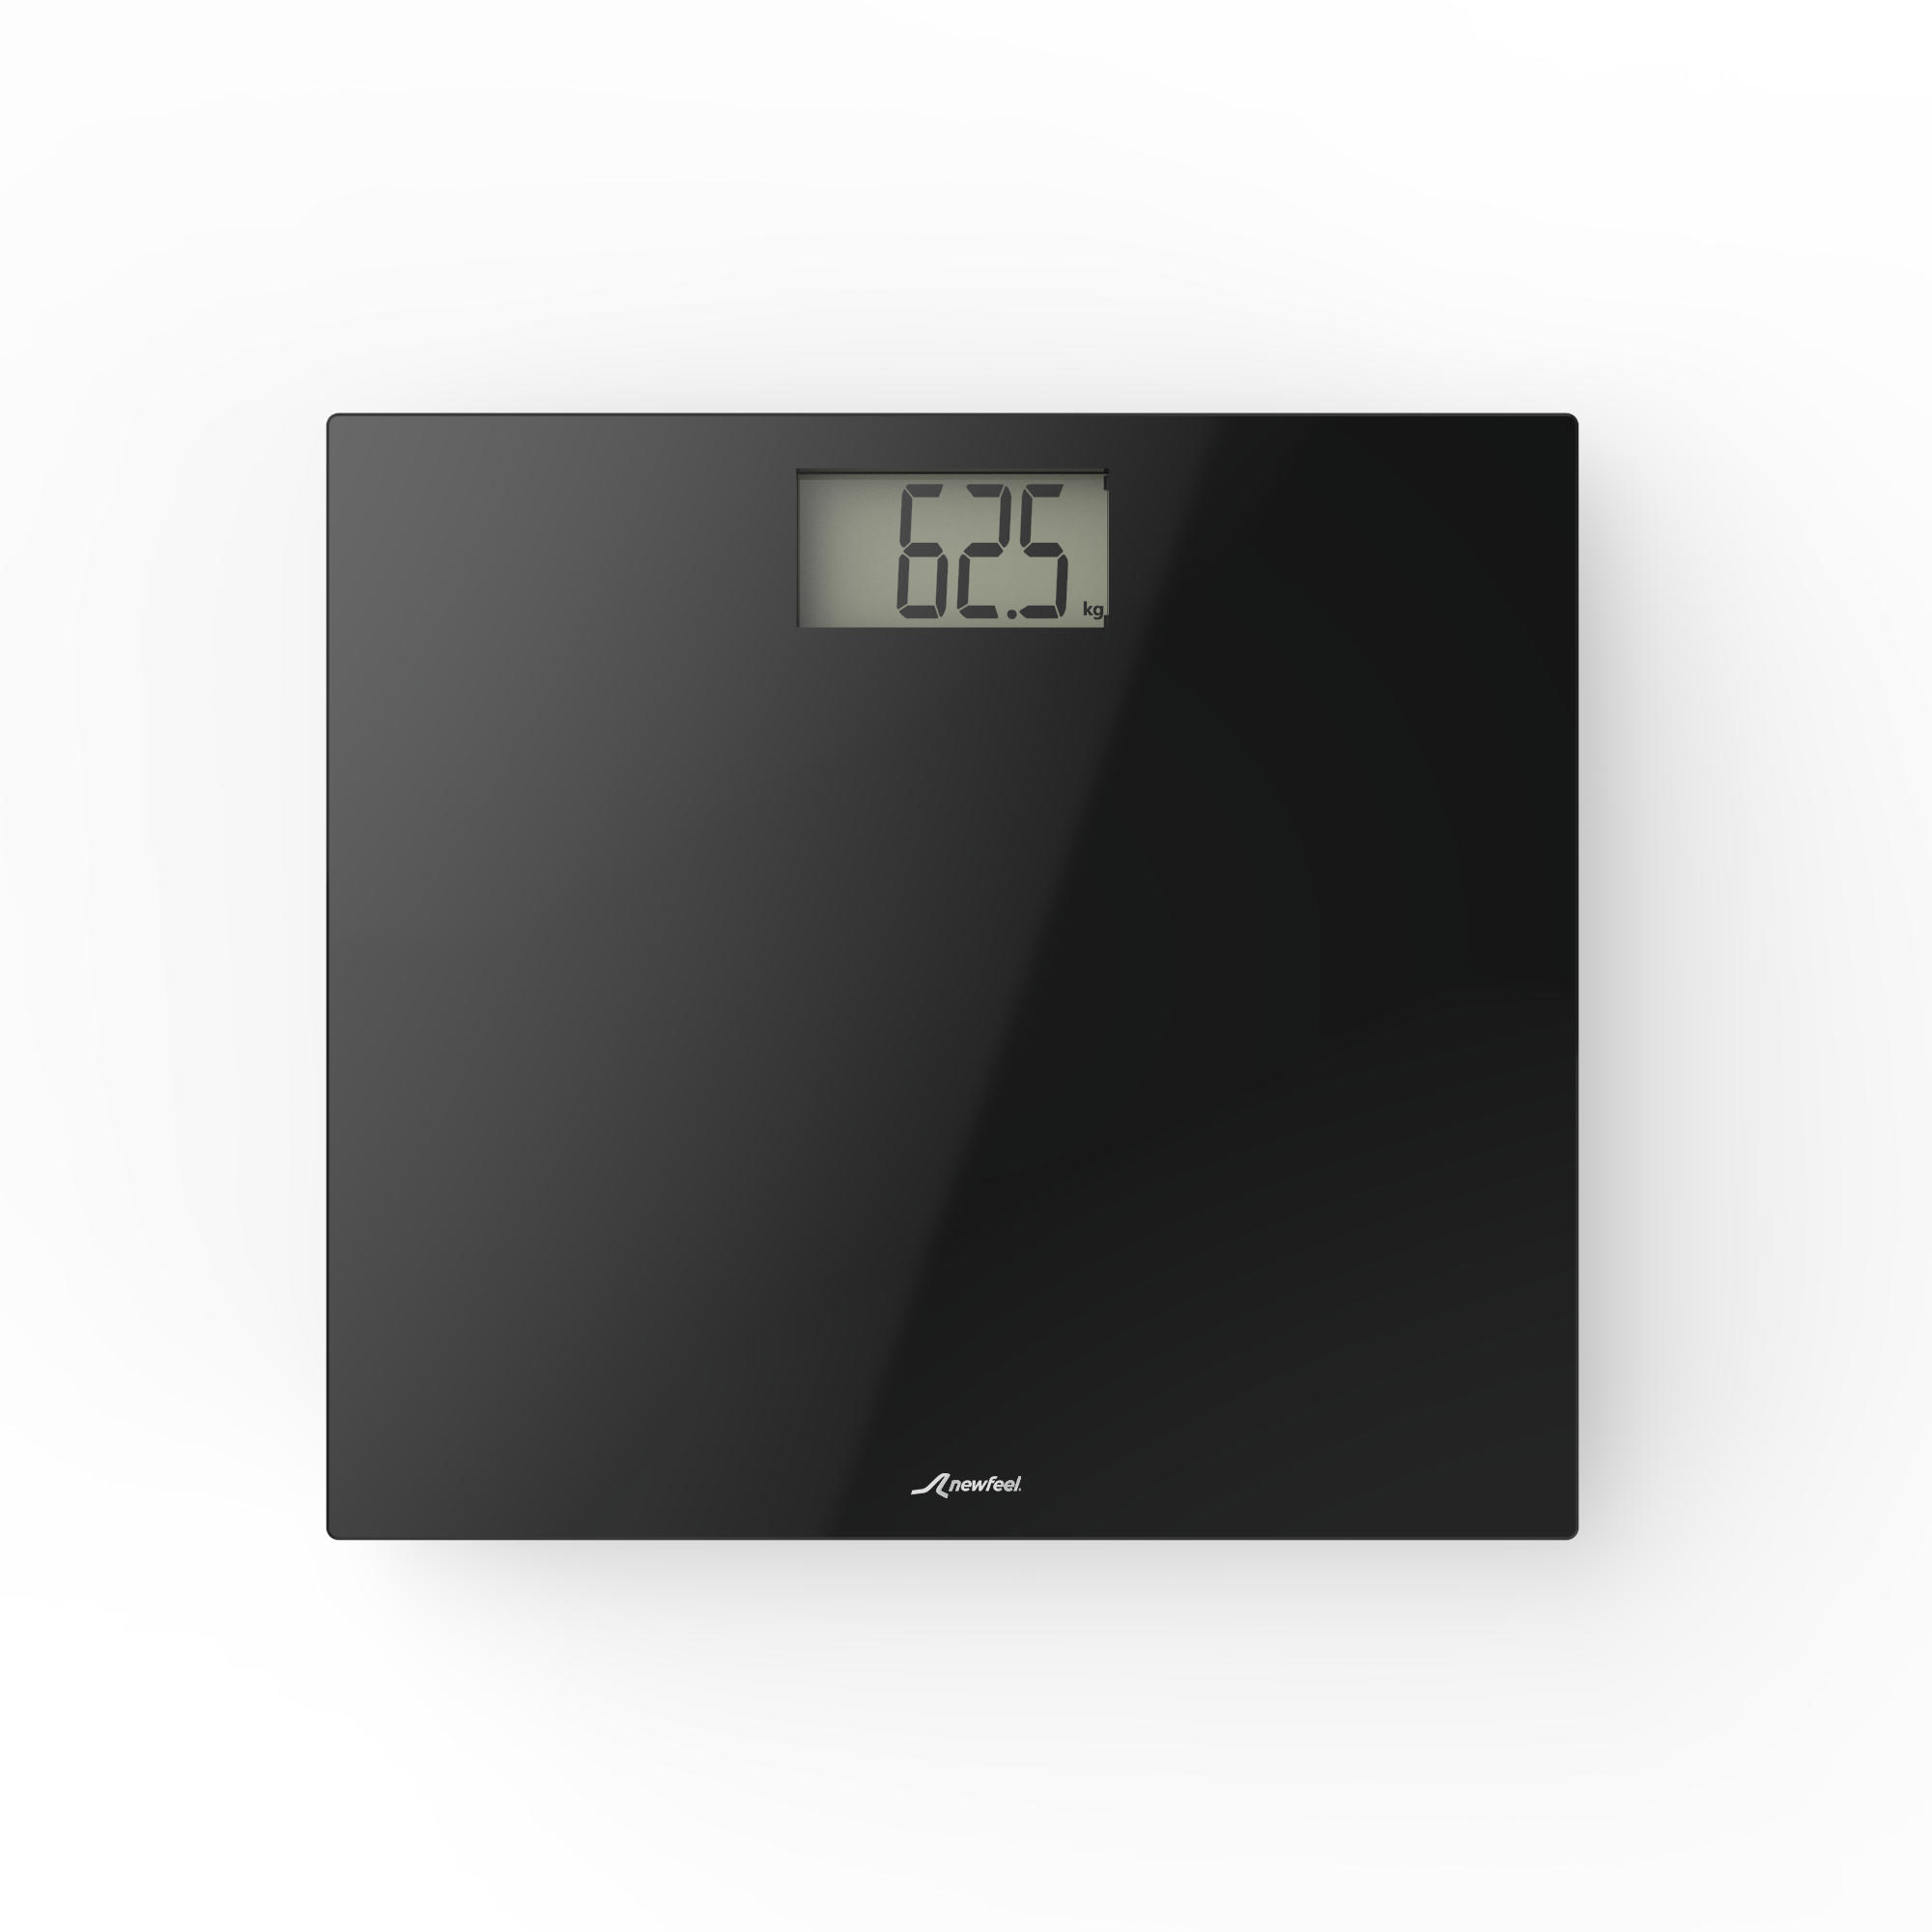 weighing machine decathlon